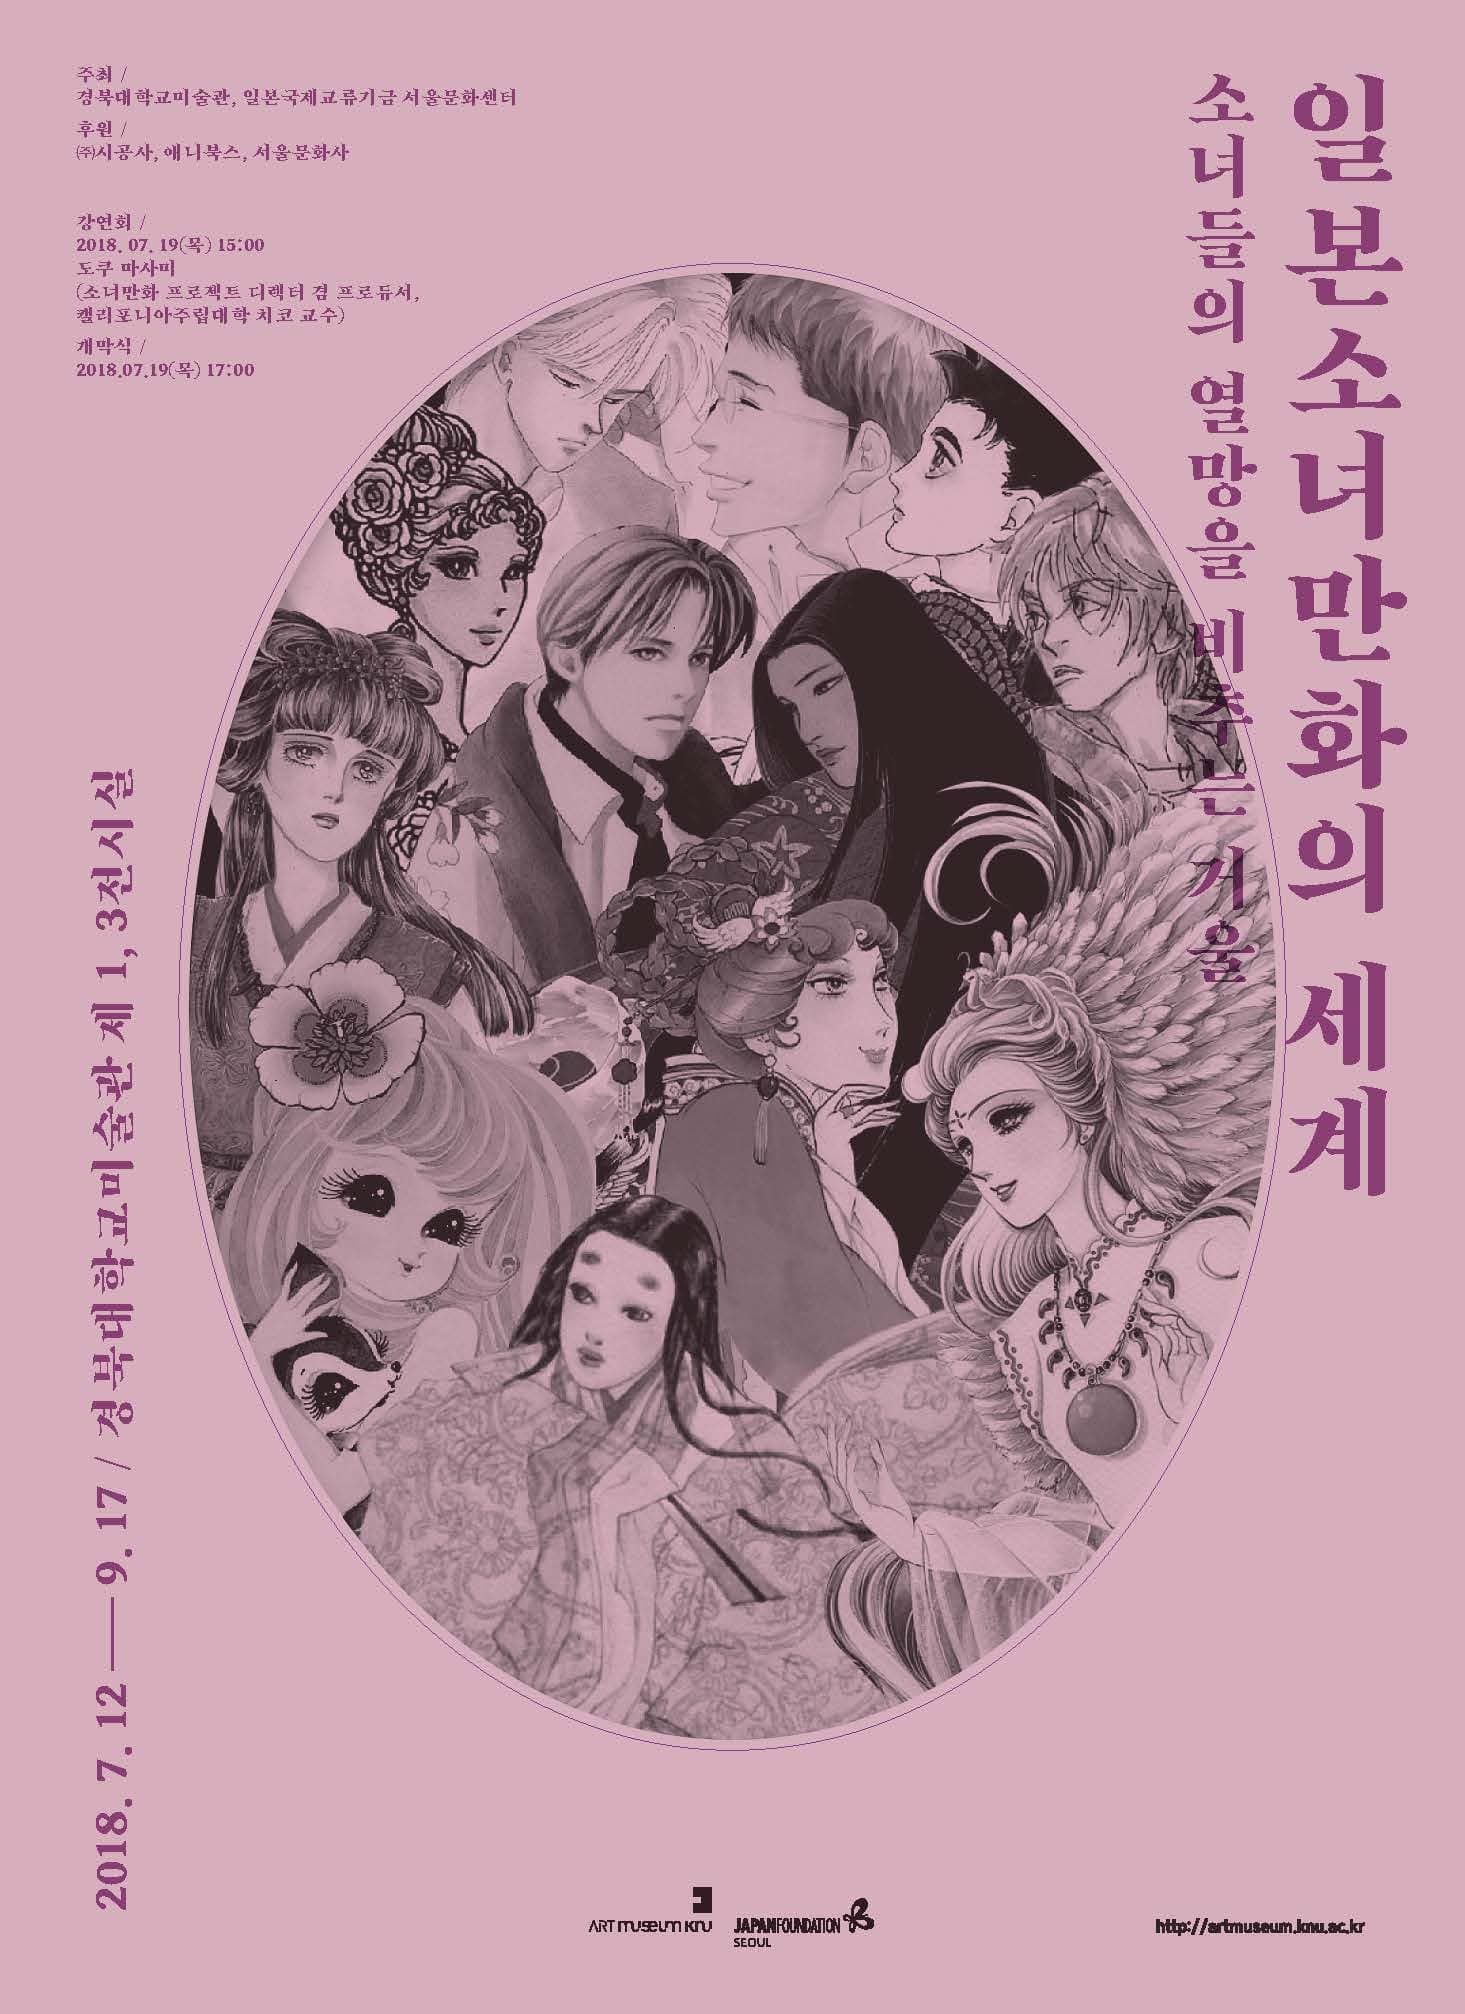 일본소녀만화의 세계 소녀들의 열망을 비추는 거울 2018.7.12-9.17 경북대학교 미술관 제 1,3전시실